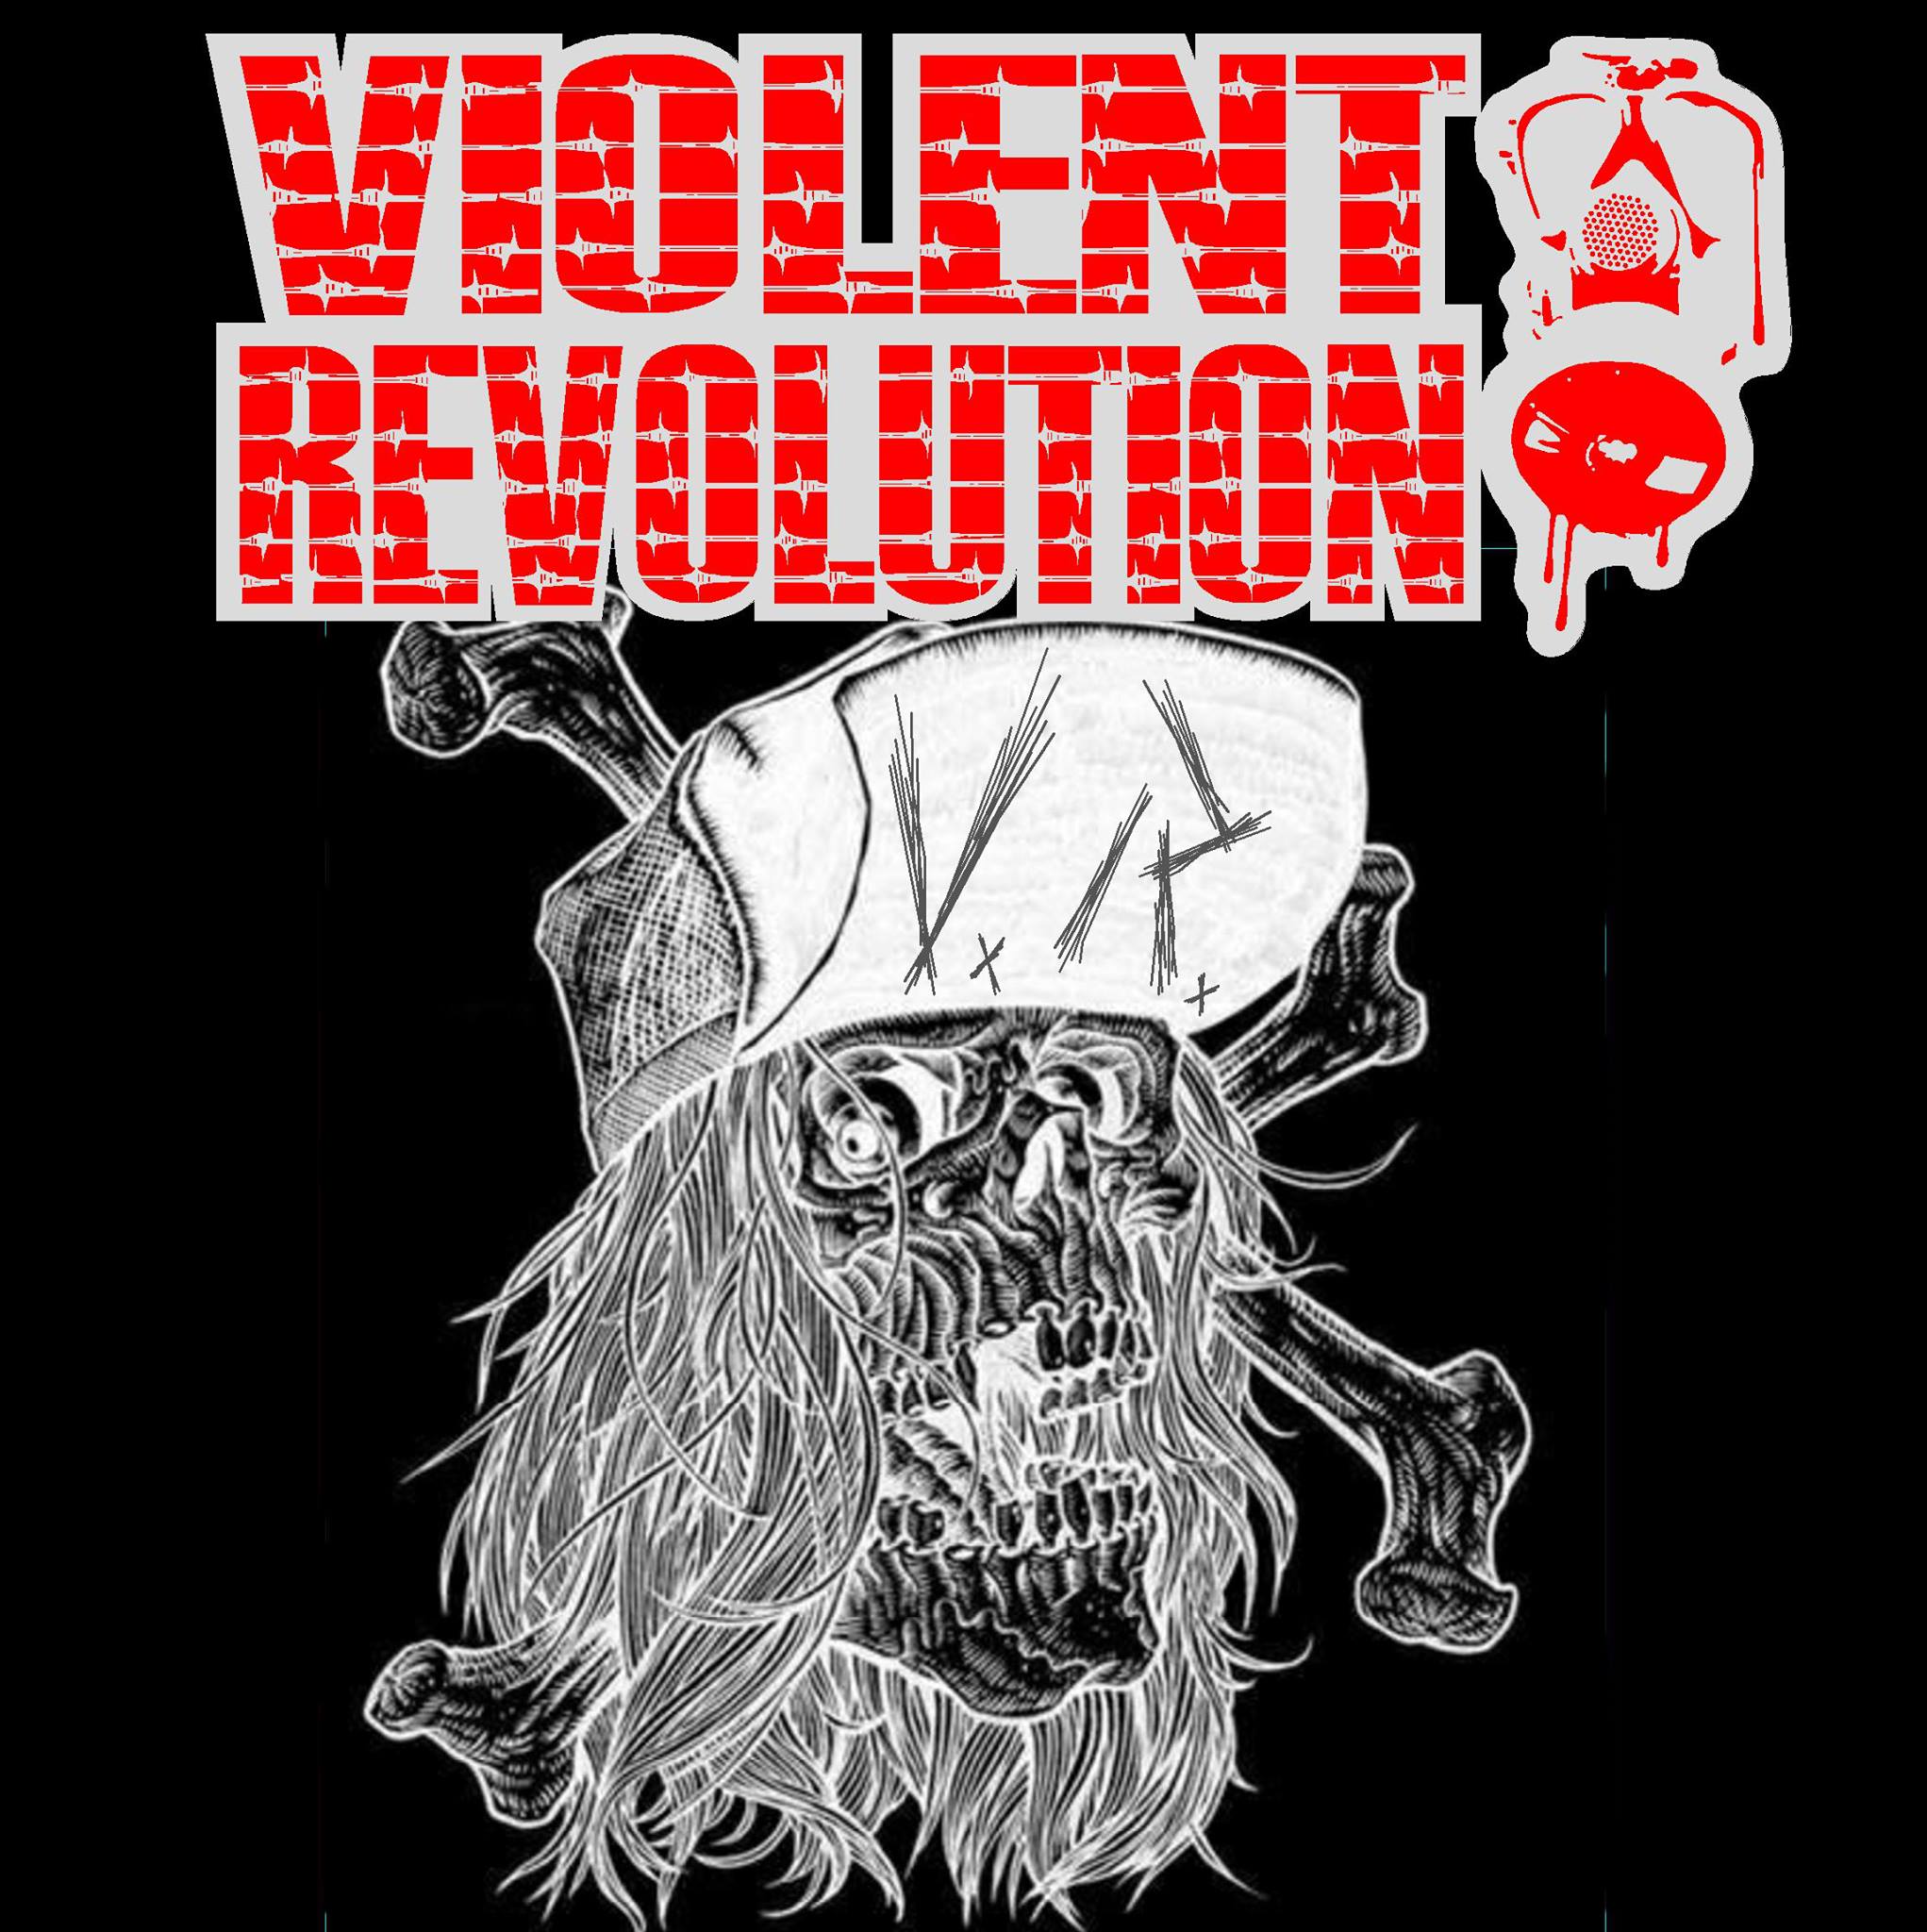 violentrevolution.jpg